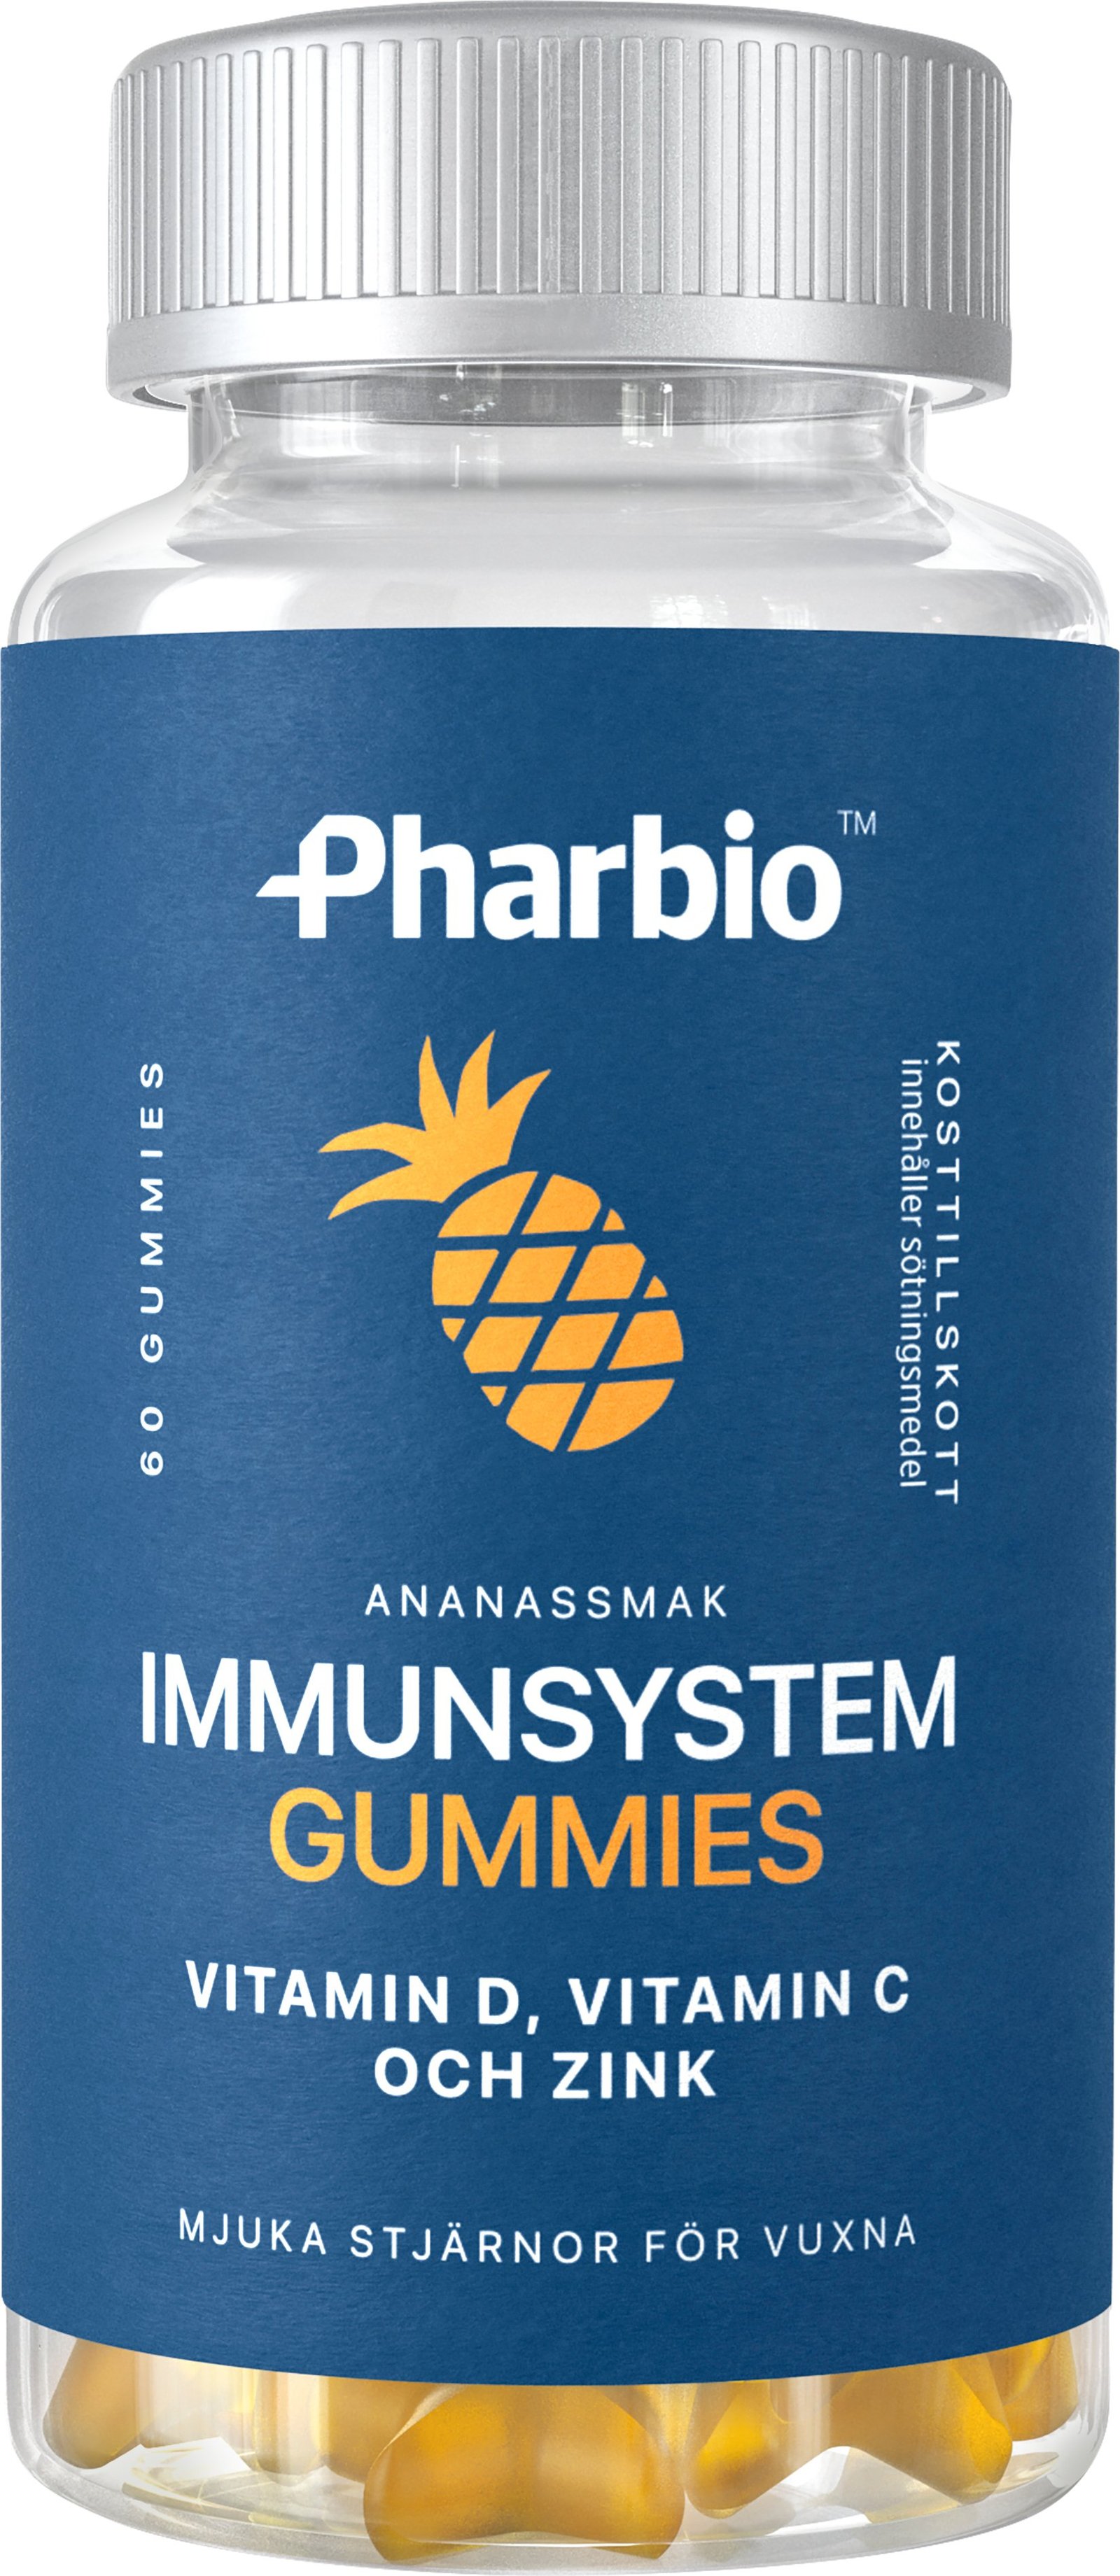 Pharbio Immunsystem Gummies 60 tuggtabletter